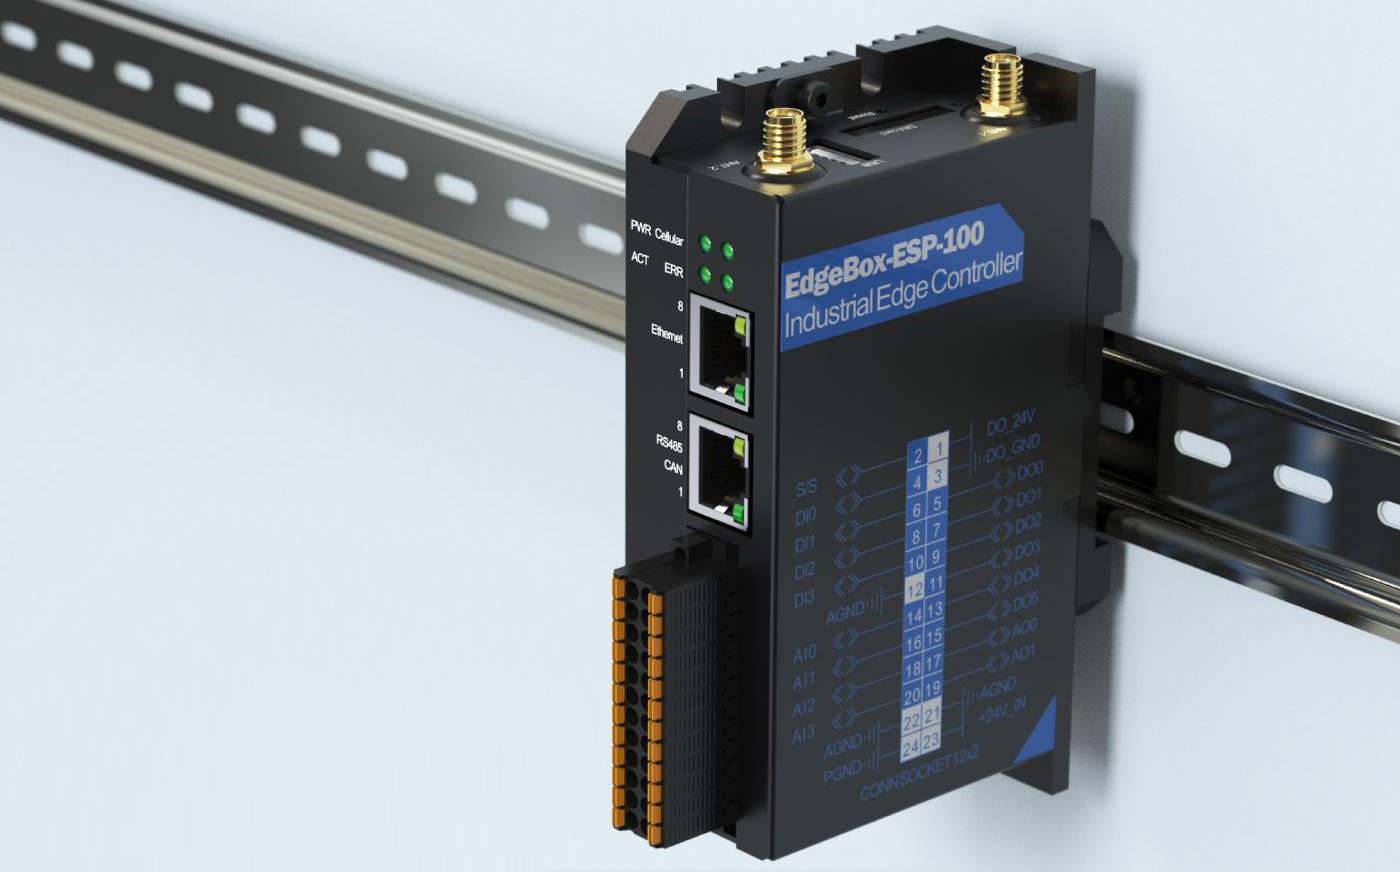 EdgeBox-ESP-100 Industrieller Edge-Controller, WiFi, BLE, 4G LTE, DIO, AIO, Ethernet, CAN, RS485